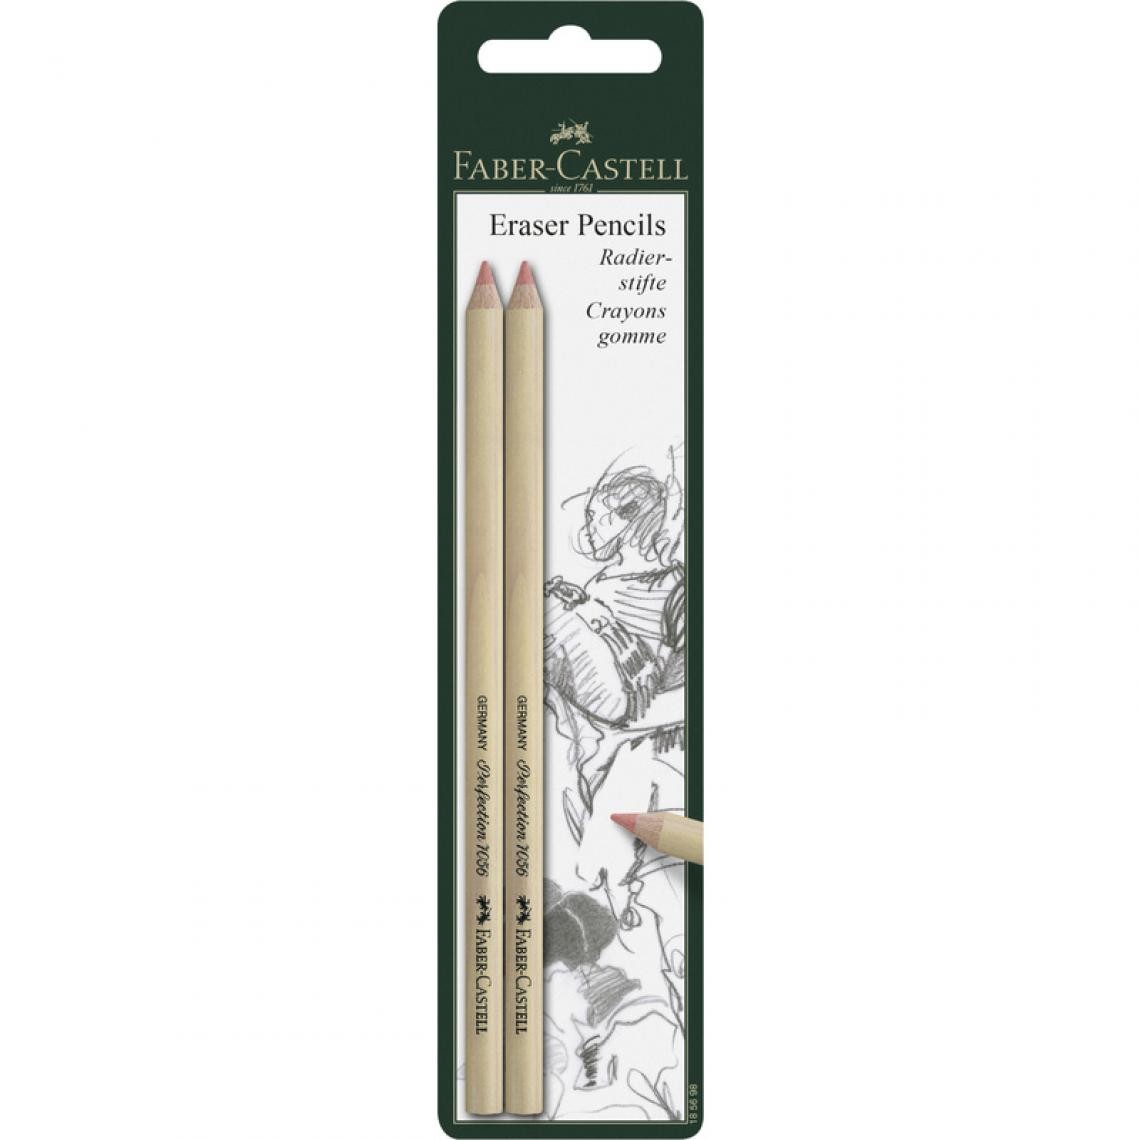 Faber-Castell - FABER-CASTELL Crayon gomme PERFECTION 7056, carte blister () - Outils et accessoires du peintre